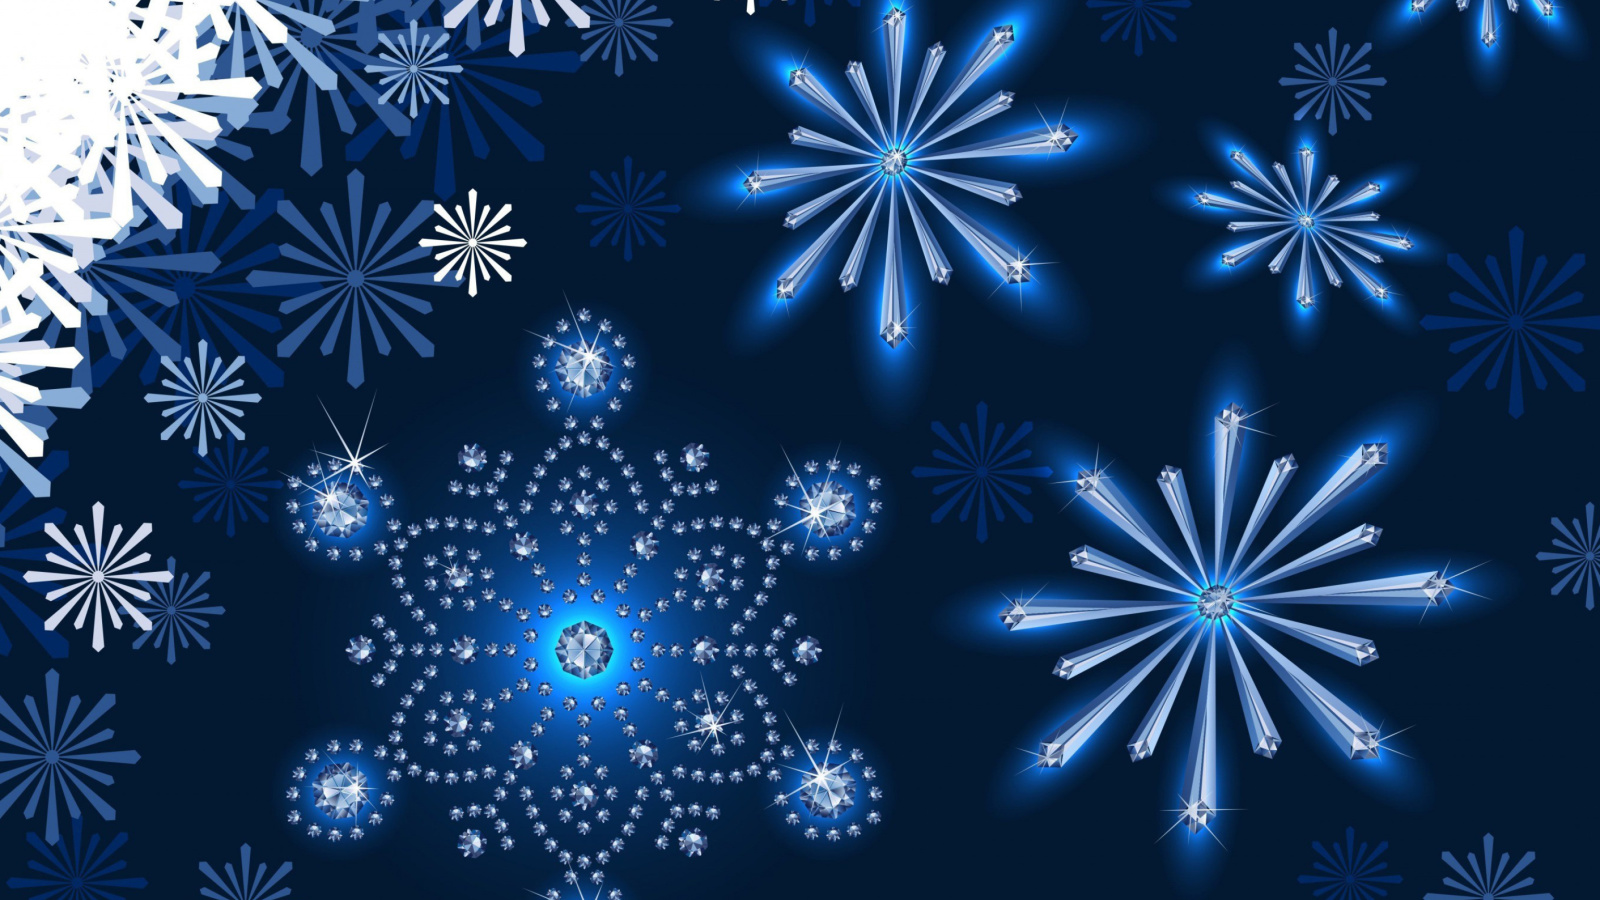 Обои Snowflakes Ornament 1600x900